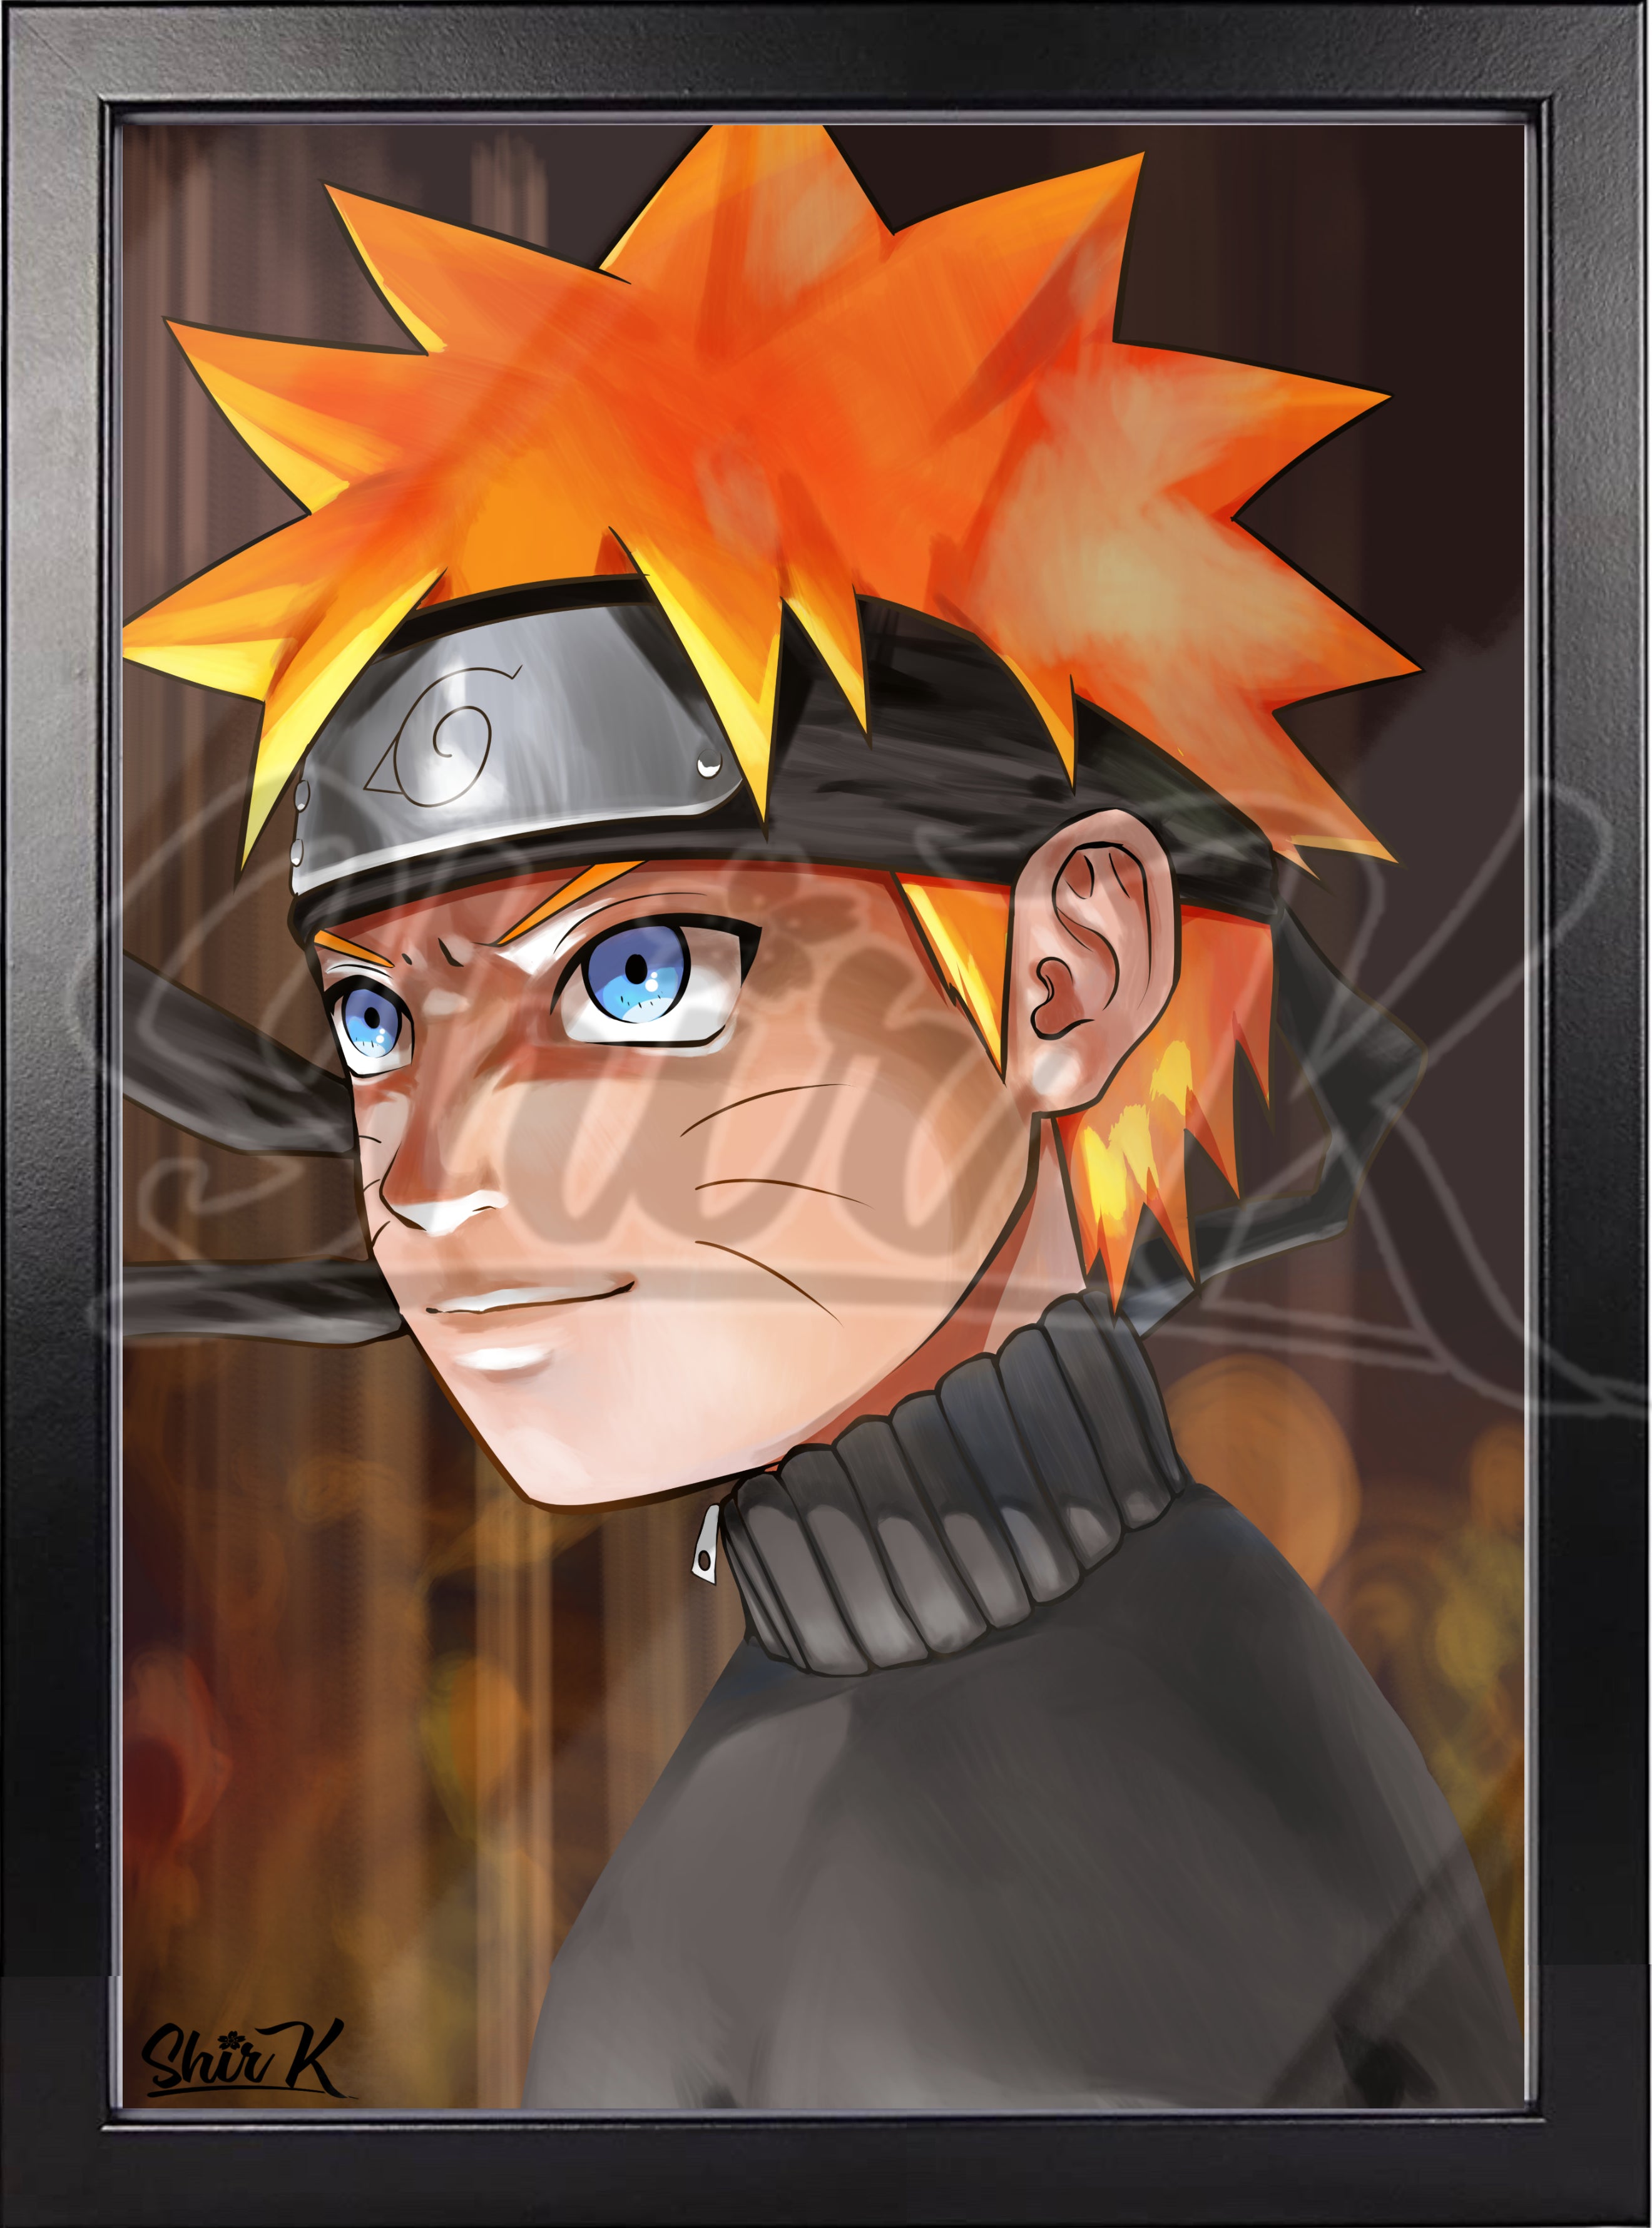 Naruto fan art : r/Naruto